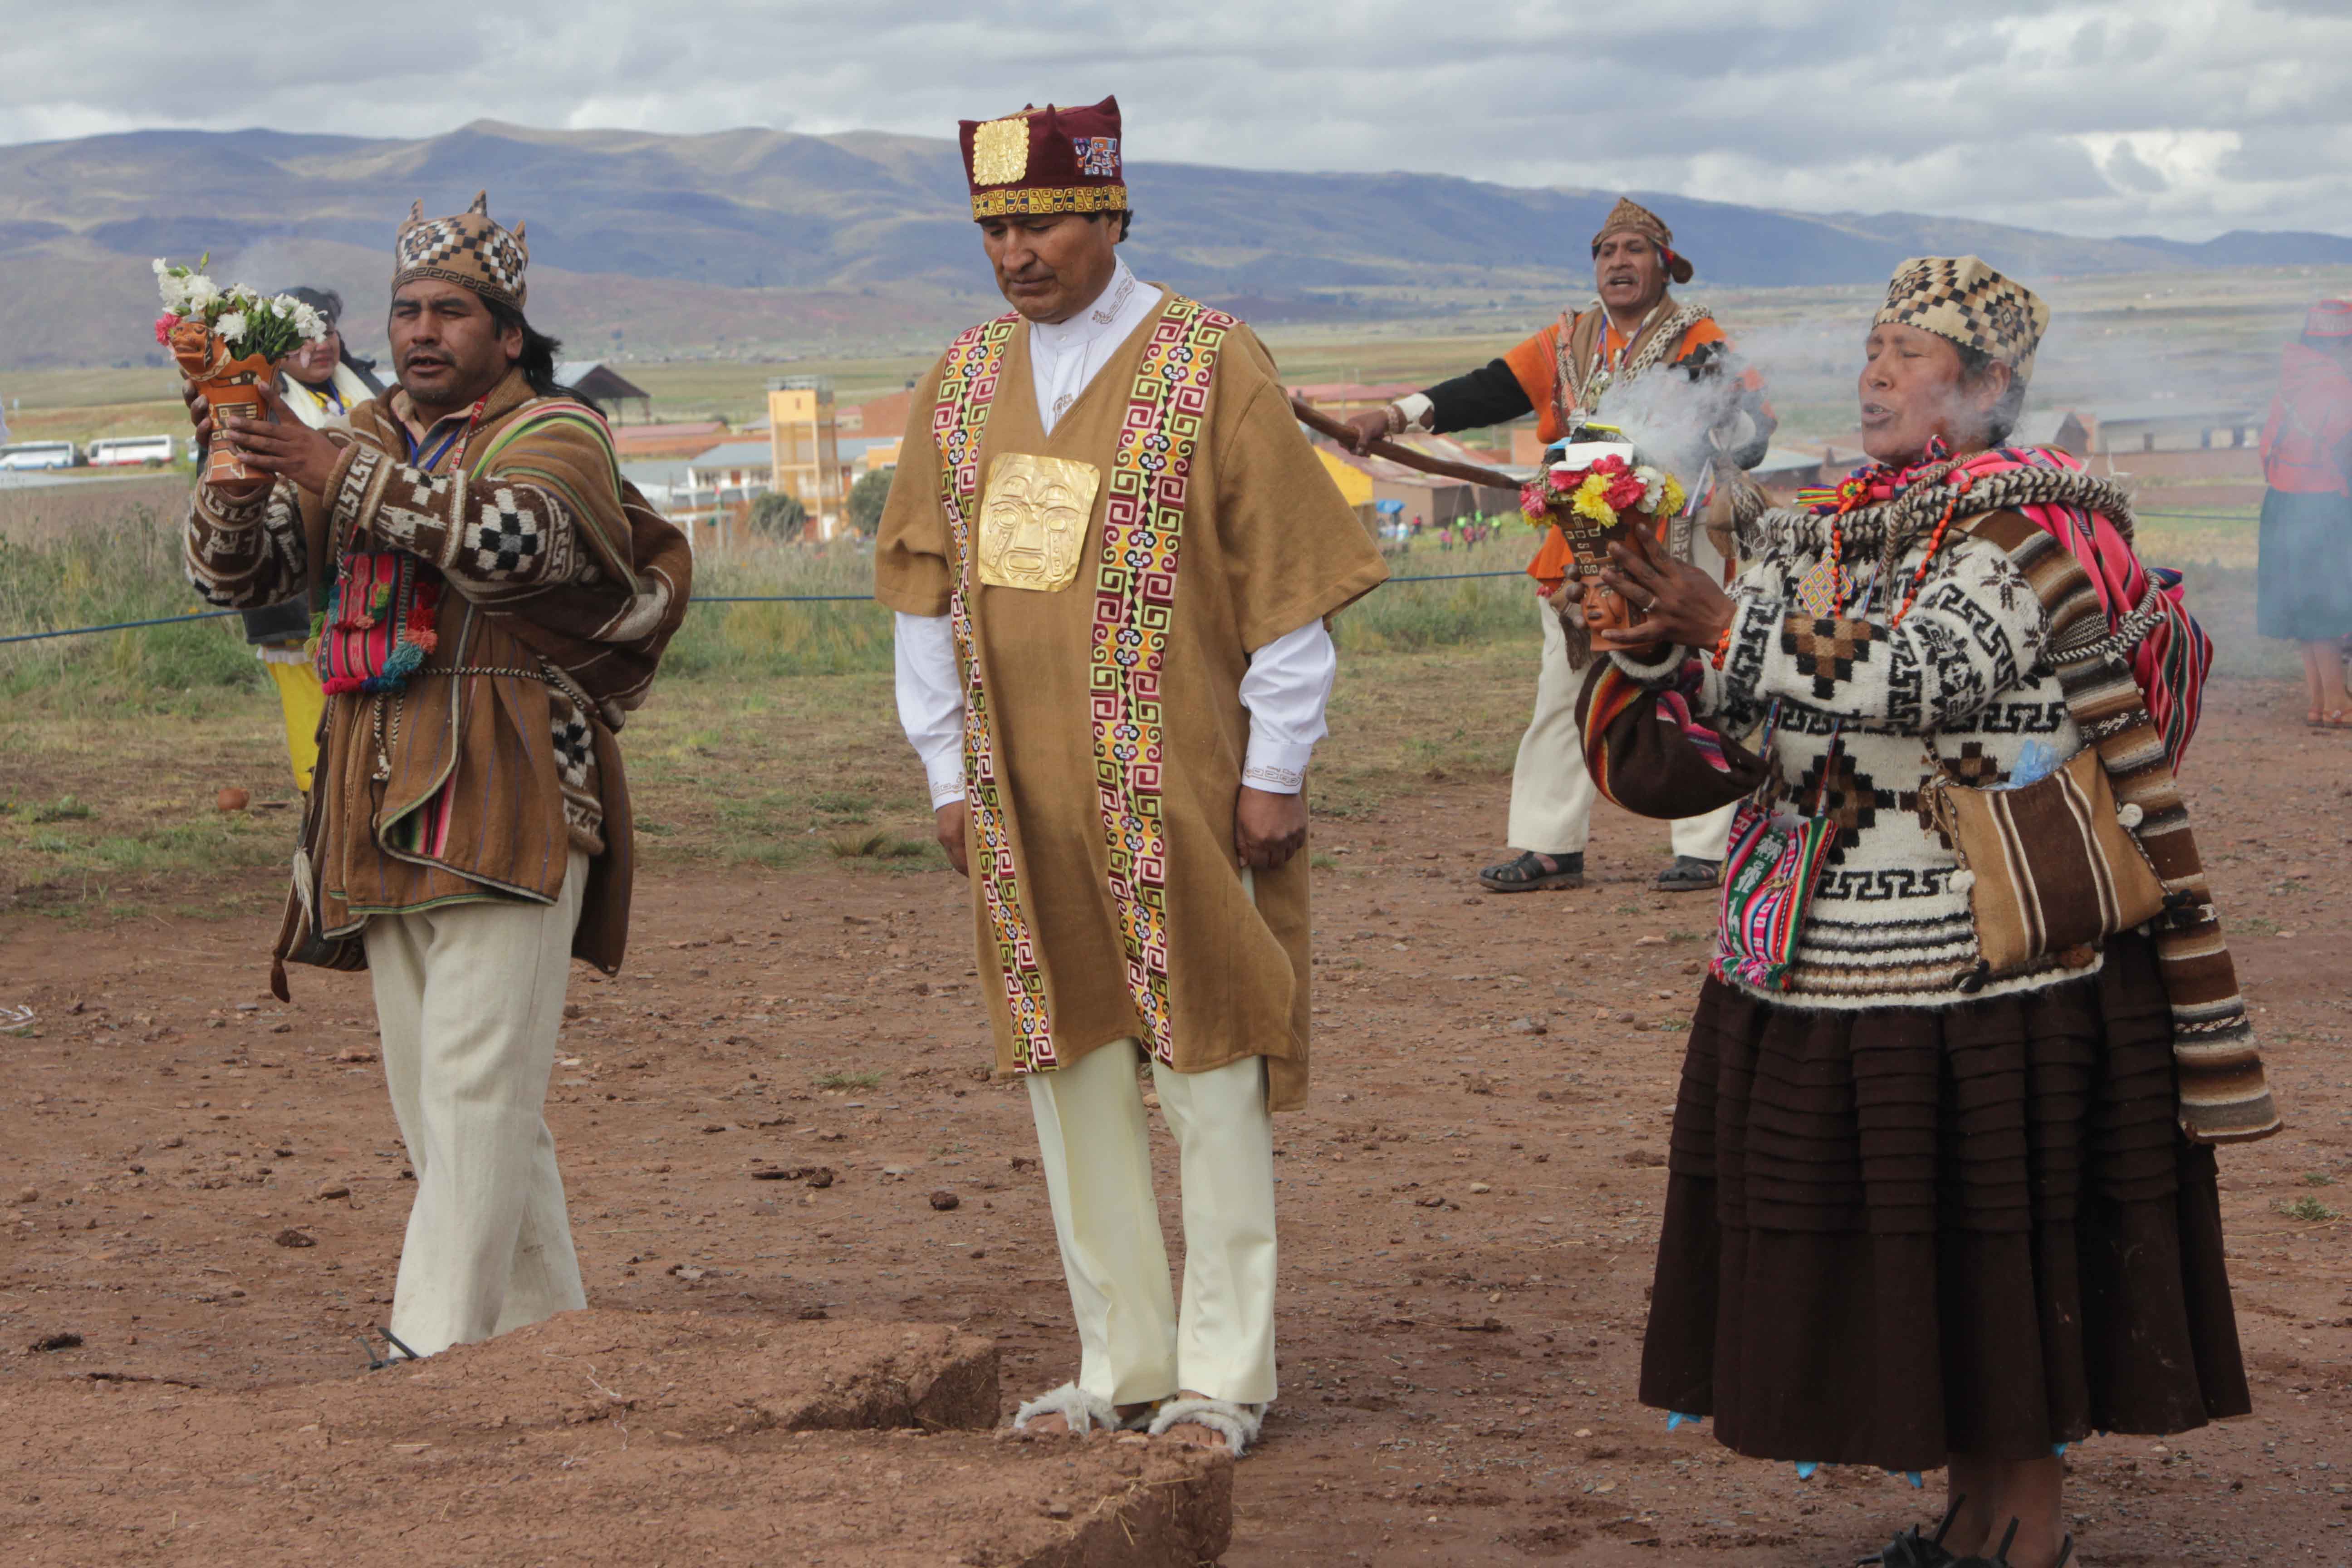 El presidente Evo Morales, en el marco del tercer ritual ancestral de su investidura en la pirámide de Akapana junto a un grupo de amautas (sabios indígenas).